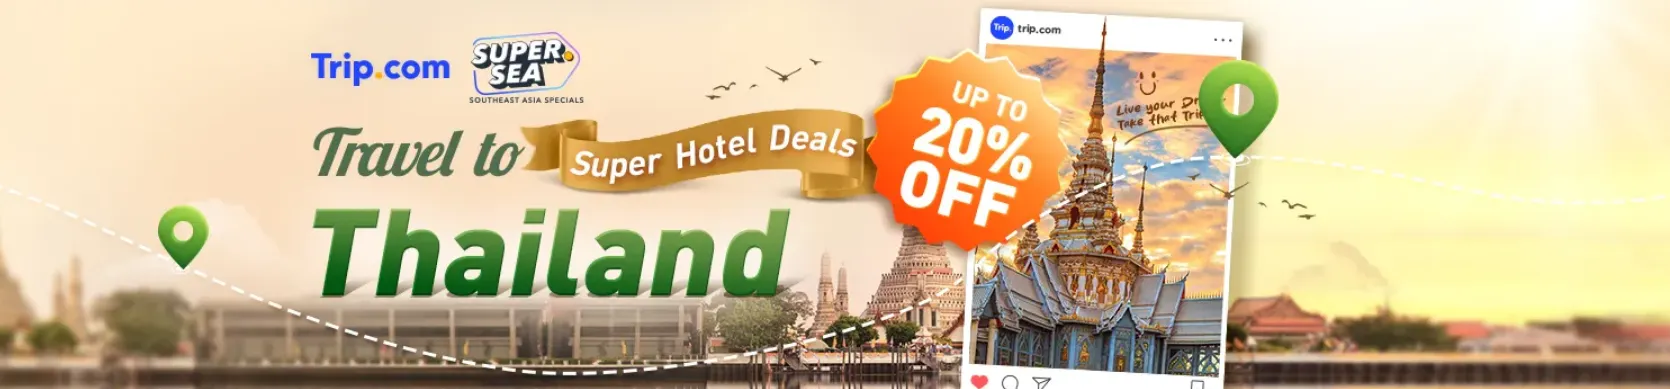 Trip.com Promo Code Hong Kong: Trip.com Super Hotel Deals: Travel to Thailand with up to 20% Off